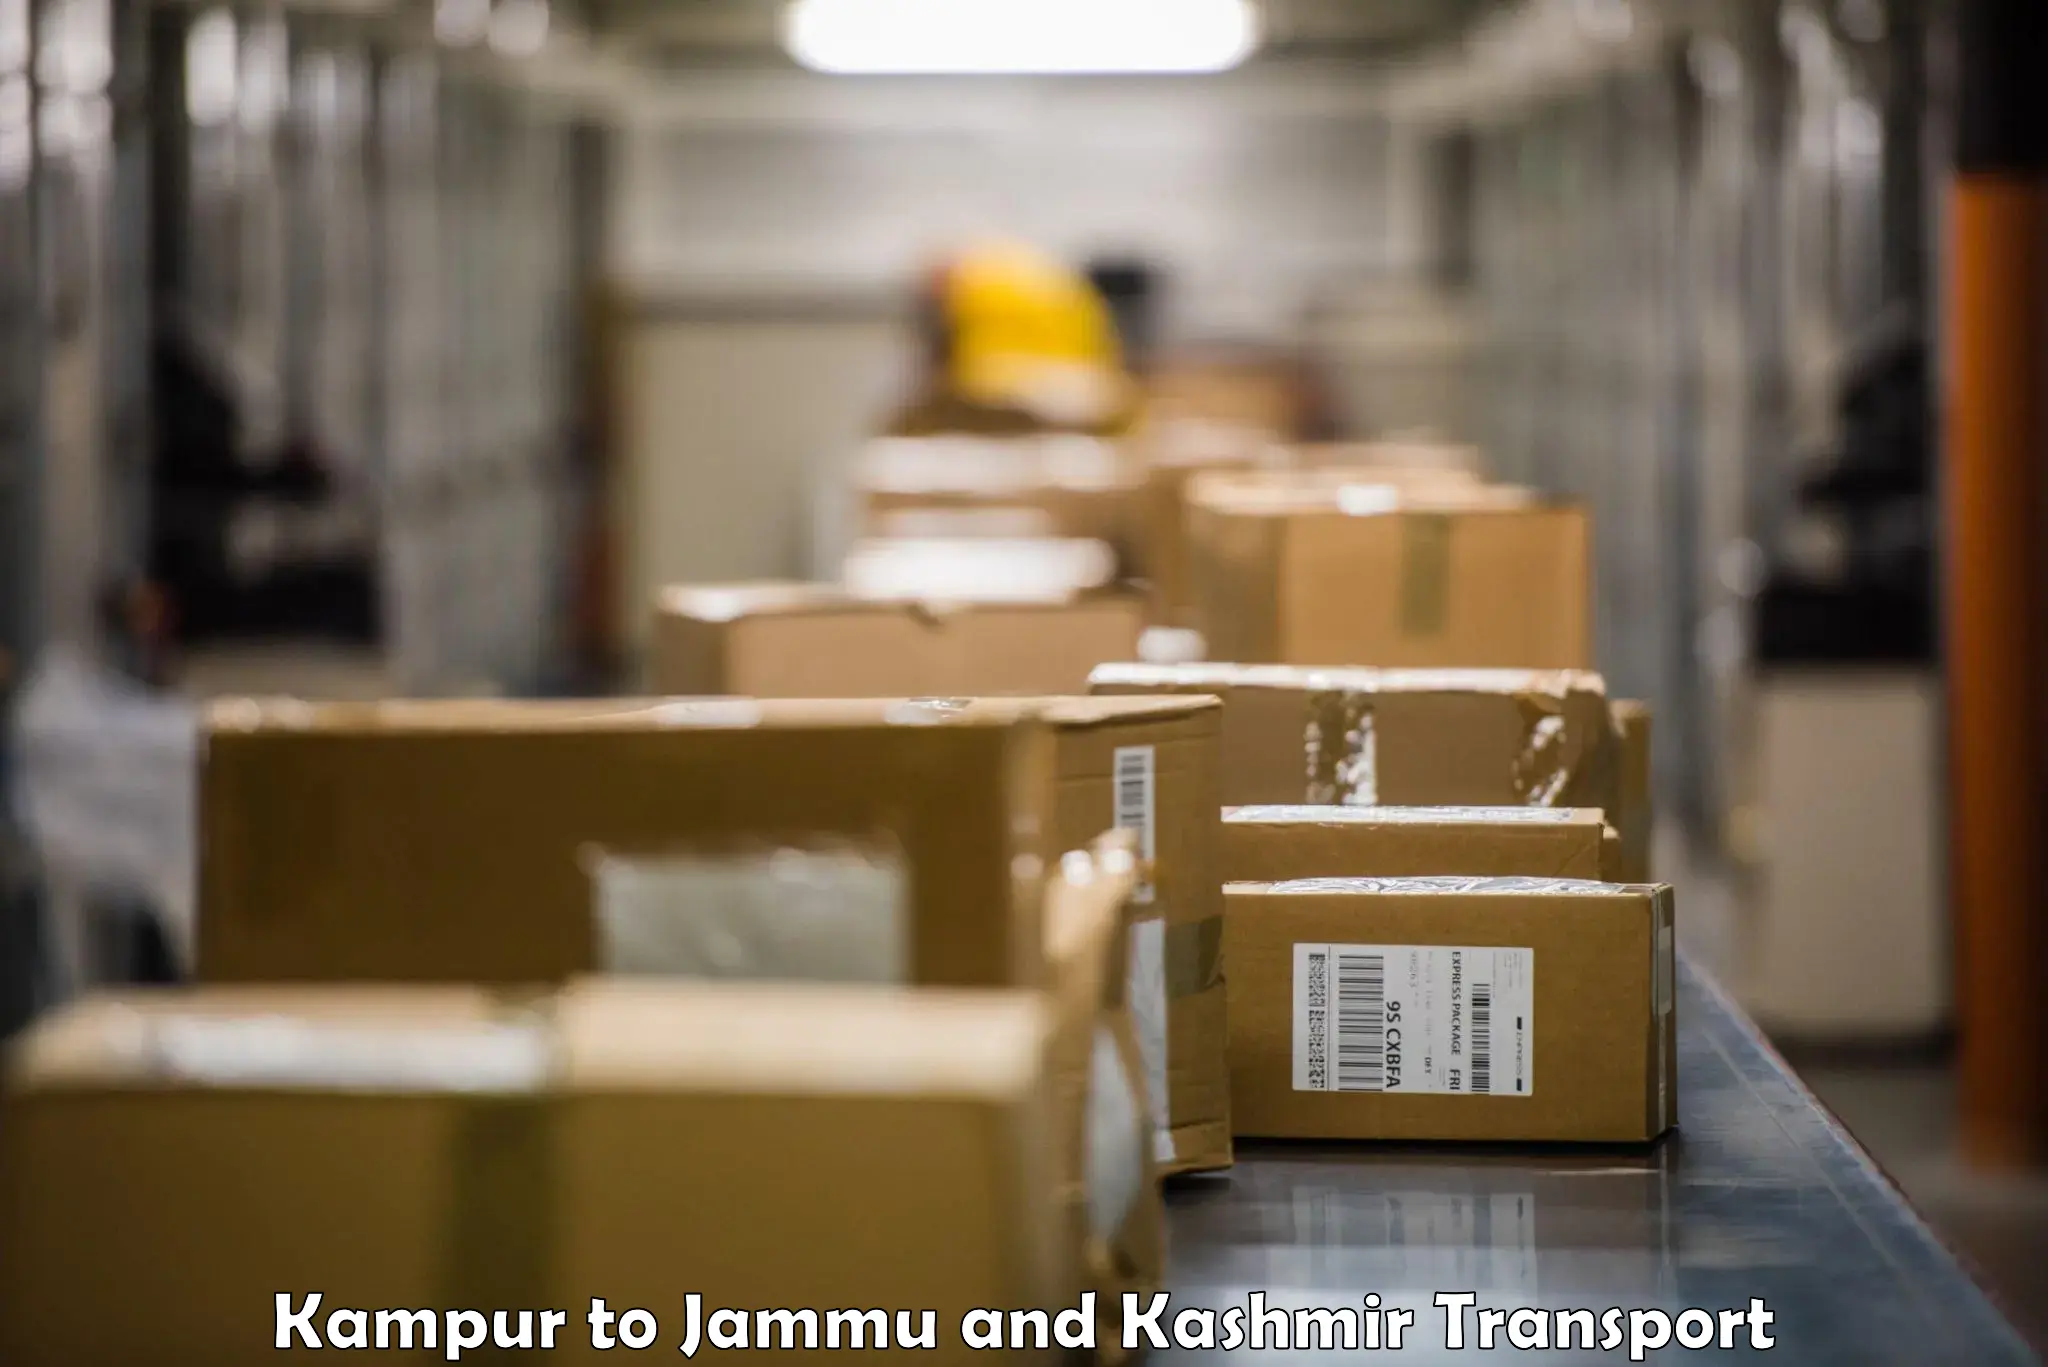 Bike shipping service Kampur to Jammu and Kashmir